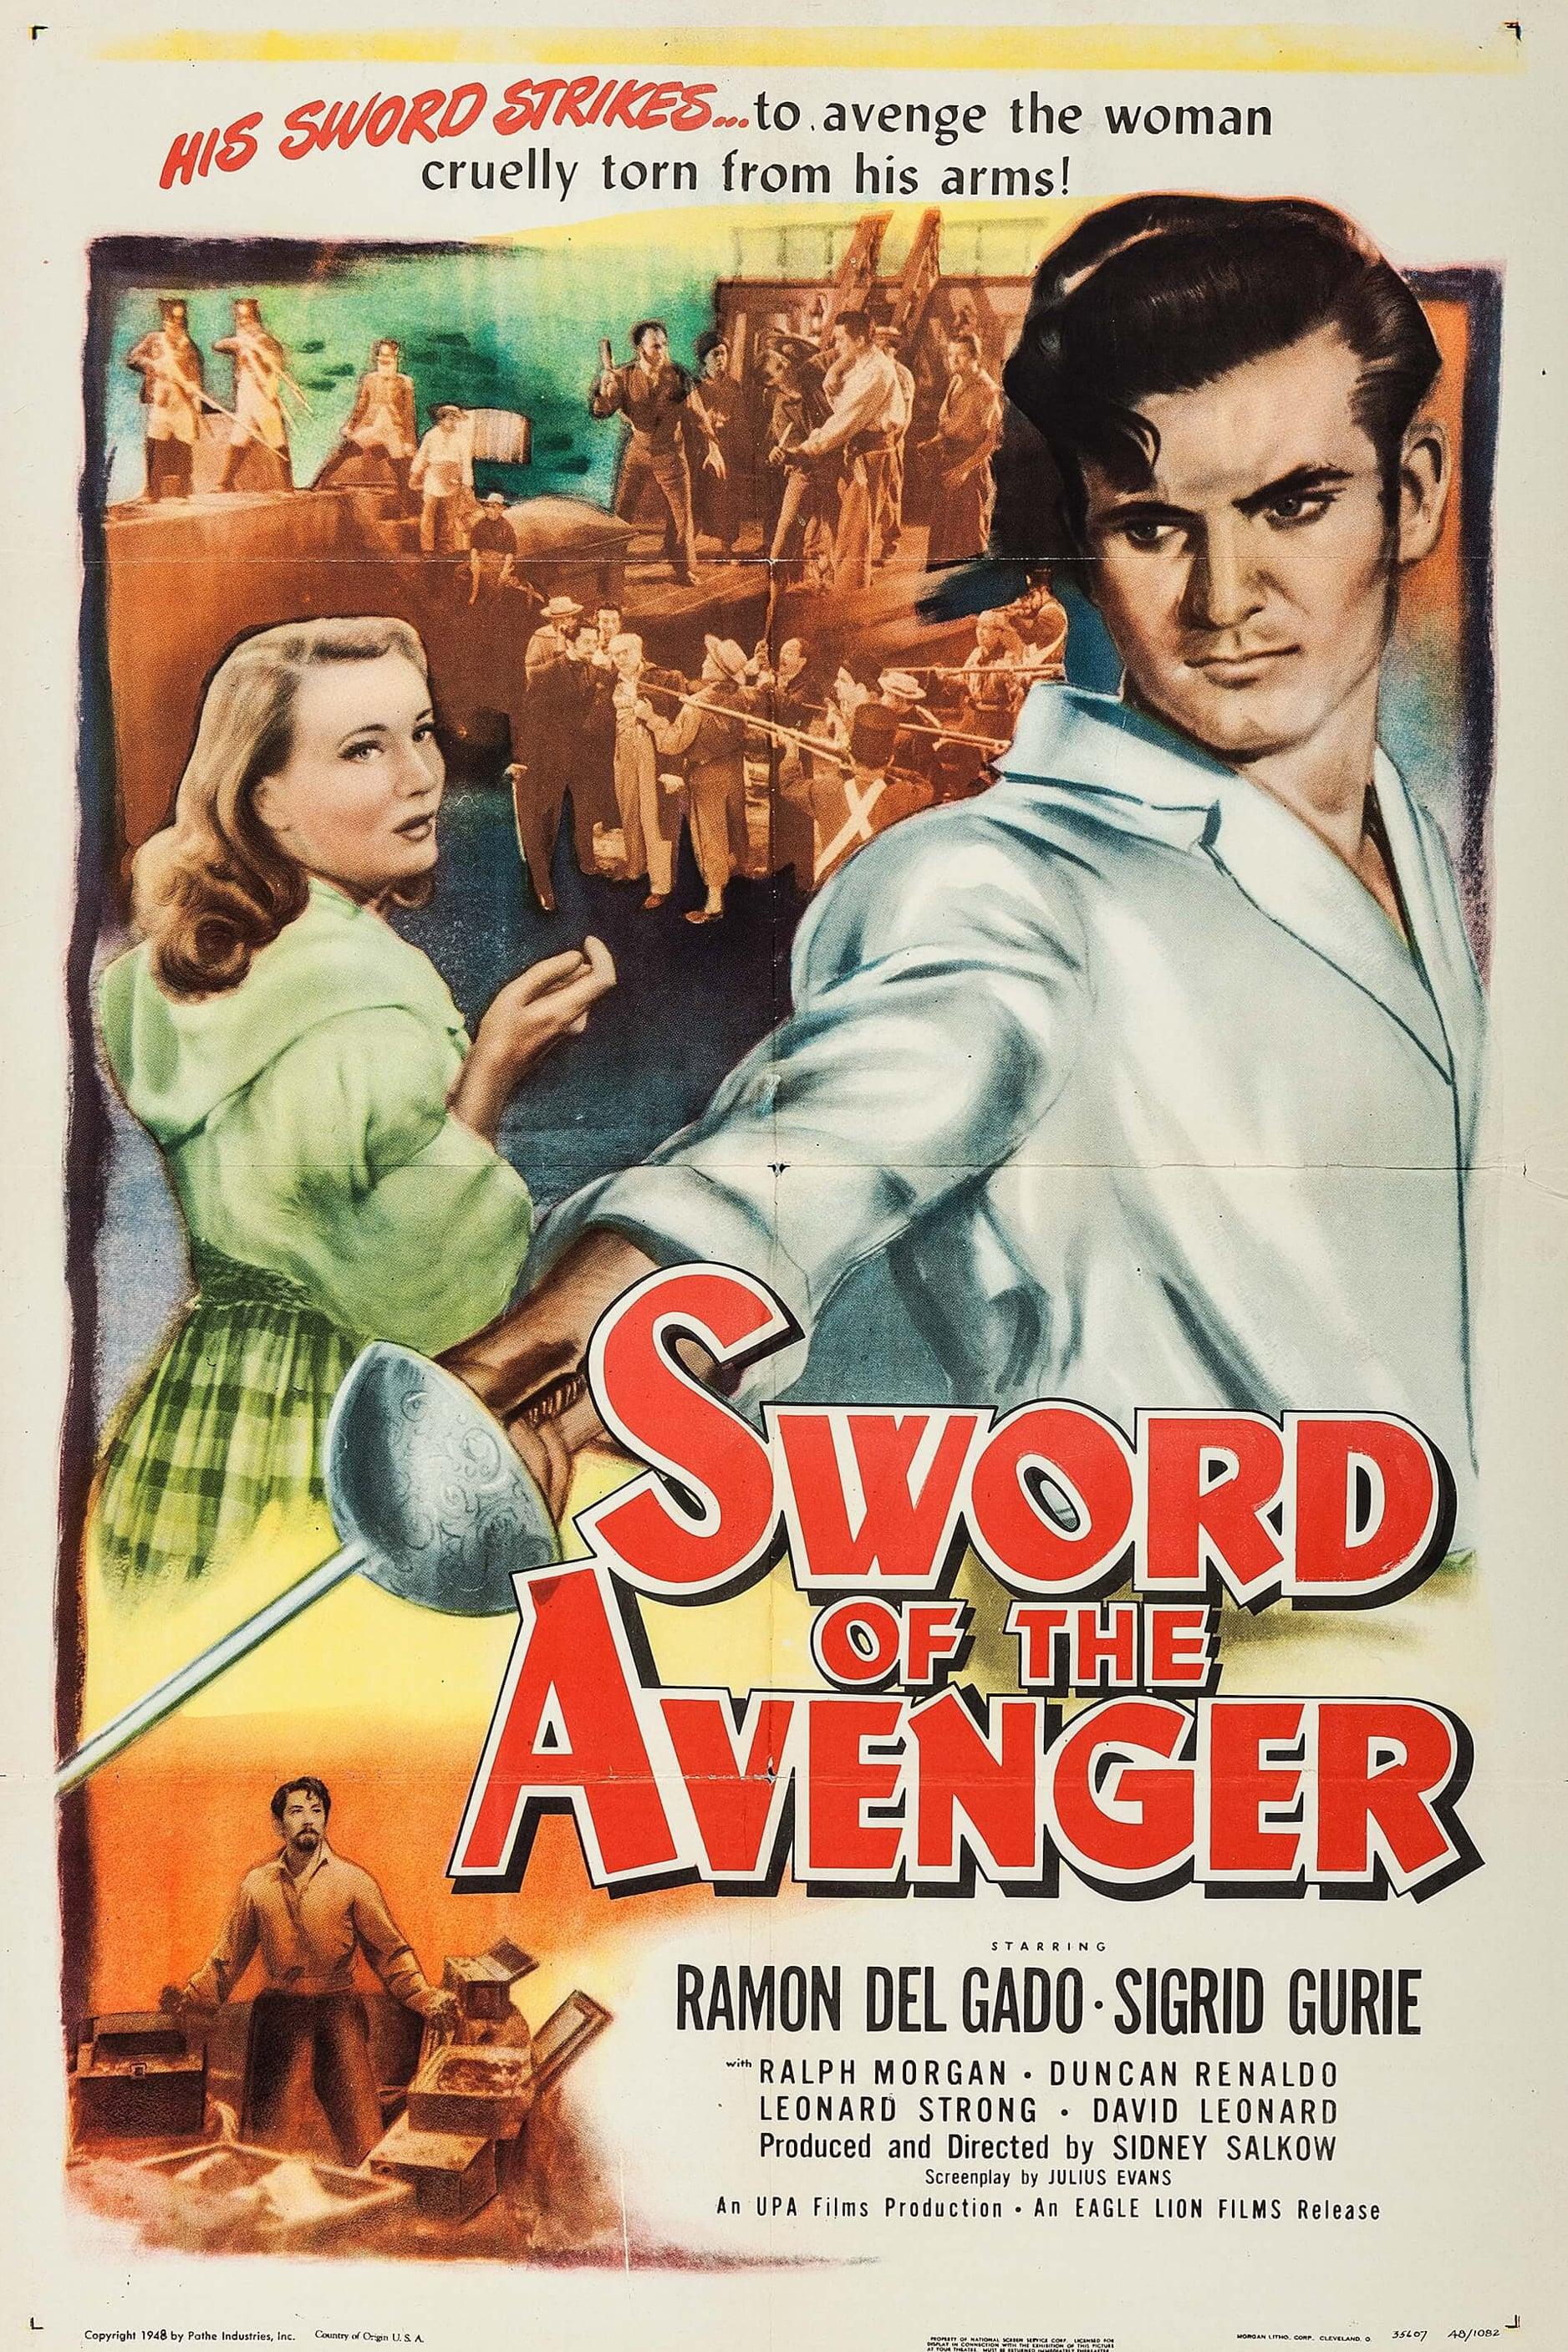 Sword of the Avenger poster